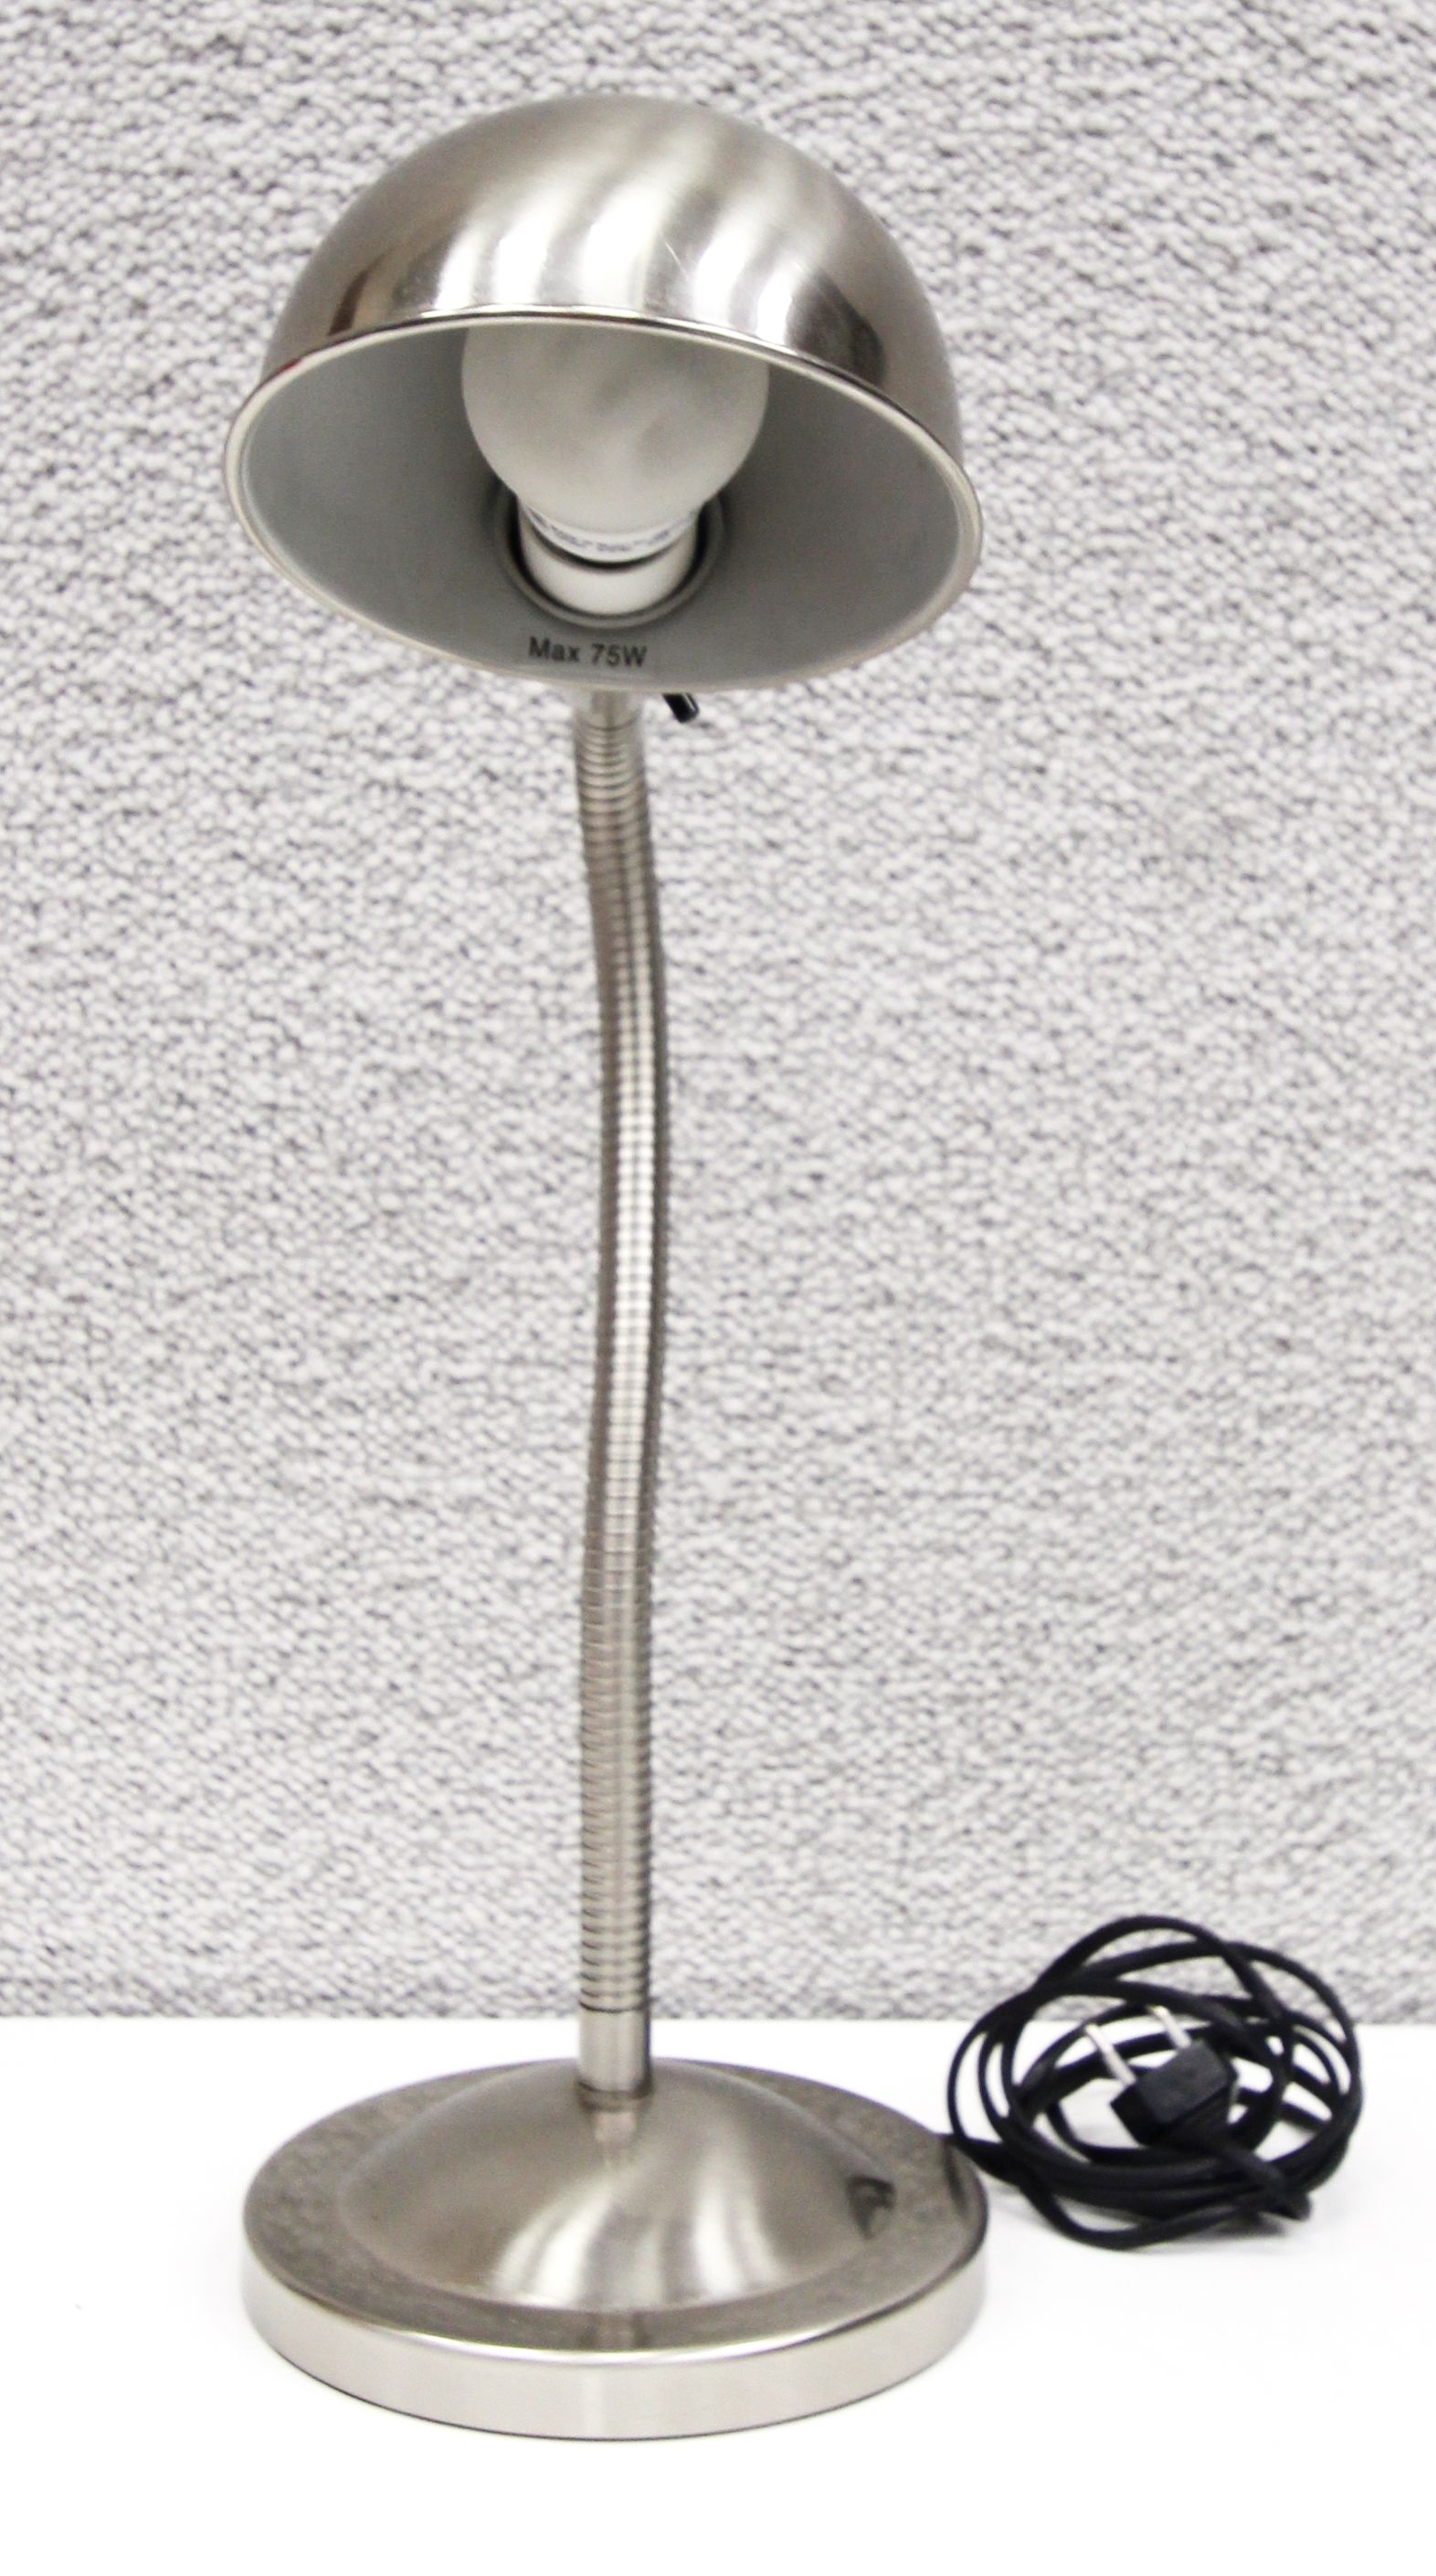 LOT 70. 1 UNITE.  LAMPE DE BUREAU A BRAS ARTICULE EN METAL DE MARQUE IKEA MODELE A0301.